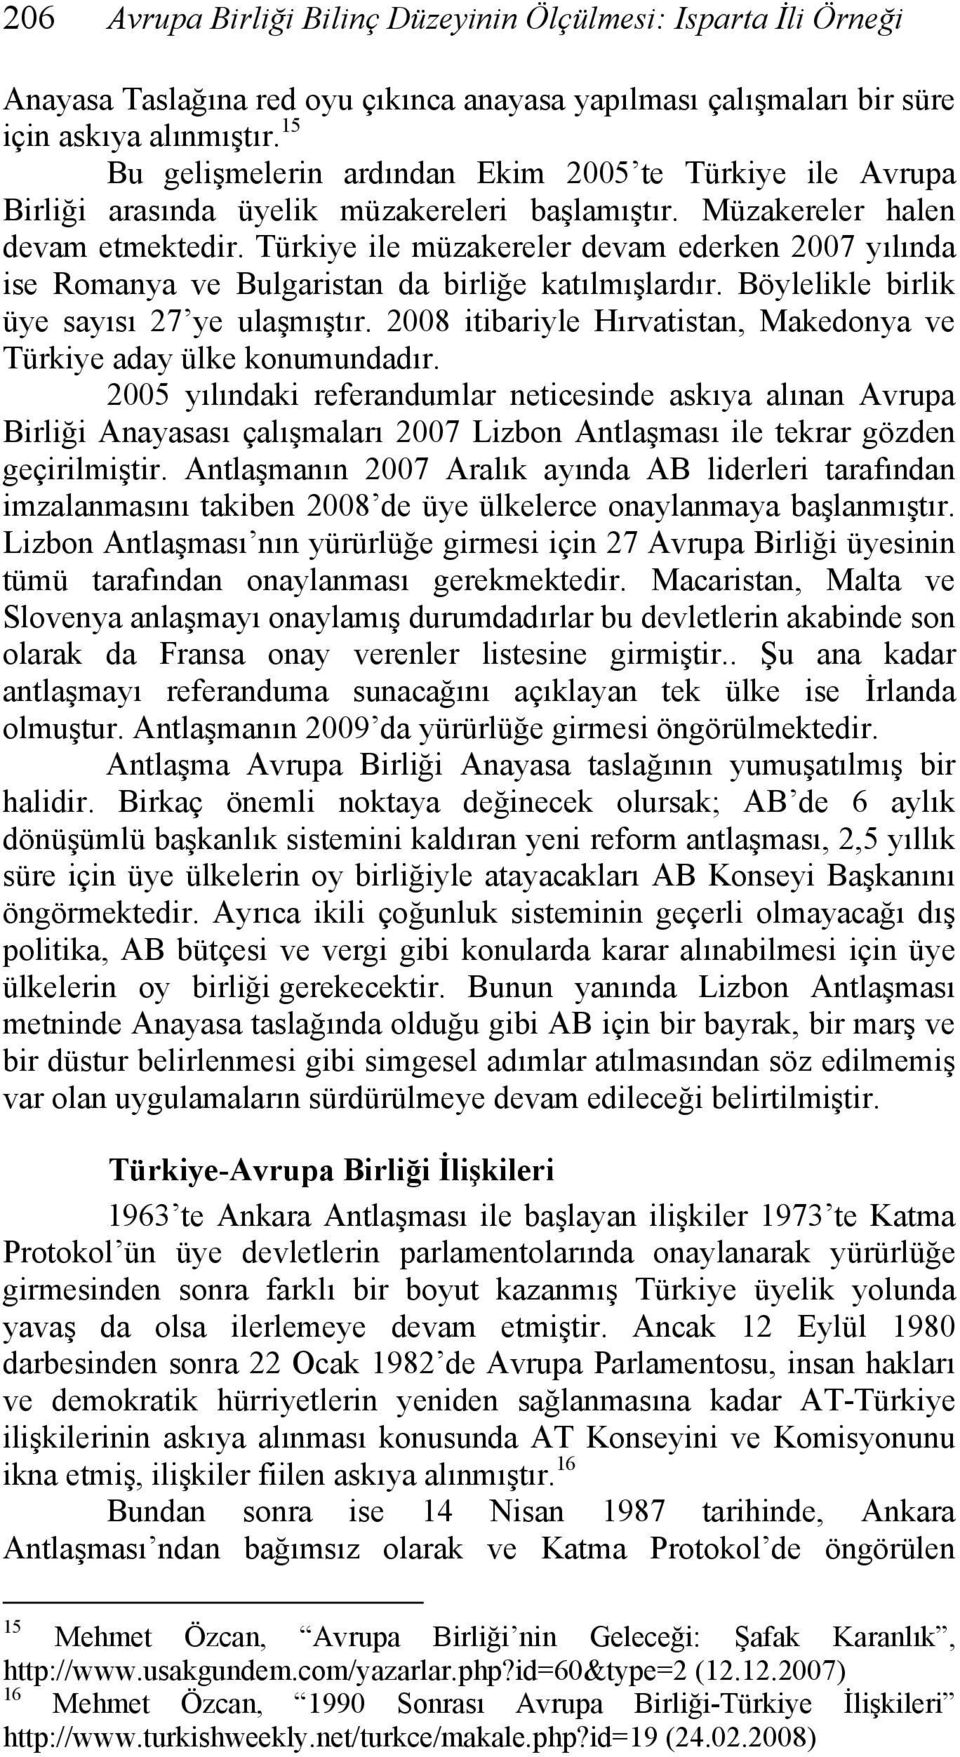 Türkiye ile müzakereler devam ederken 2007 yılında ise Romanya ve Bulgaristan da birliğe katılmışlardır. Böylelikle birlik üye sayısı 27 ye ulaşmıştır.